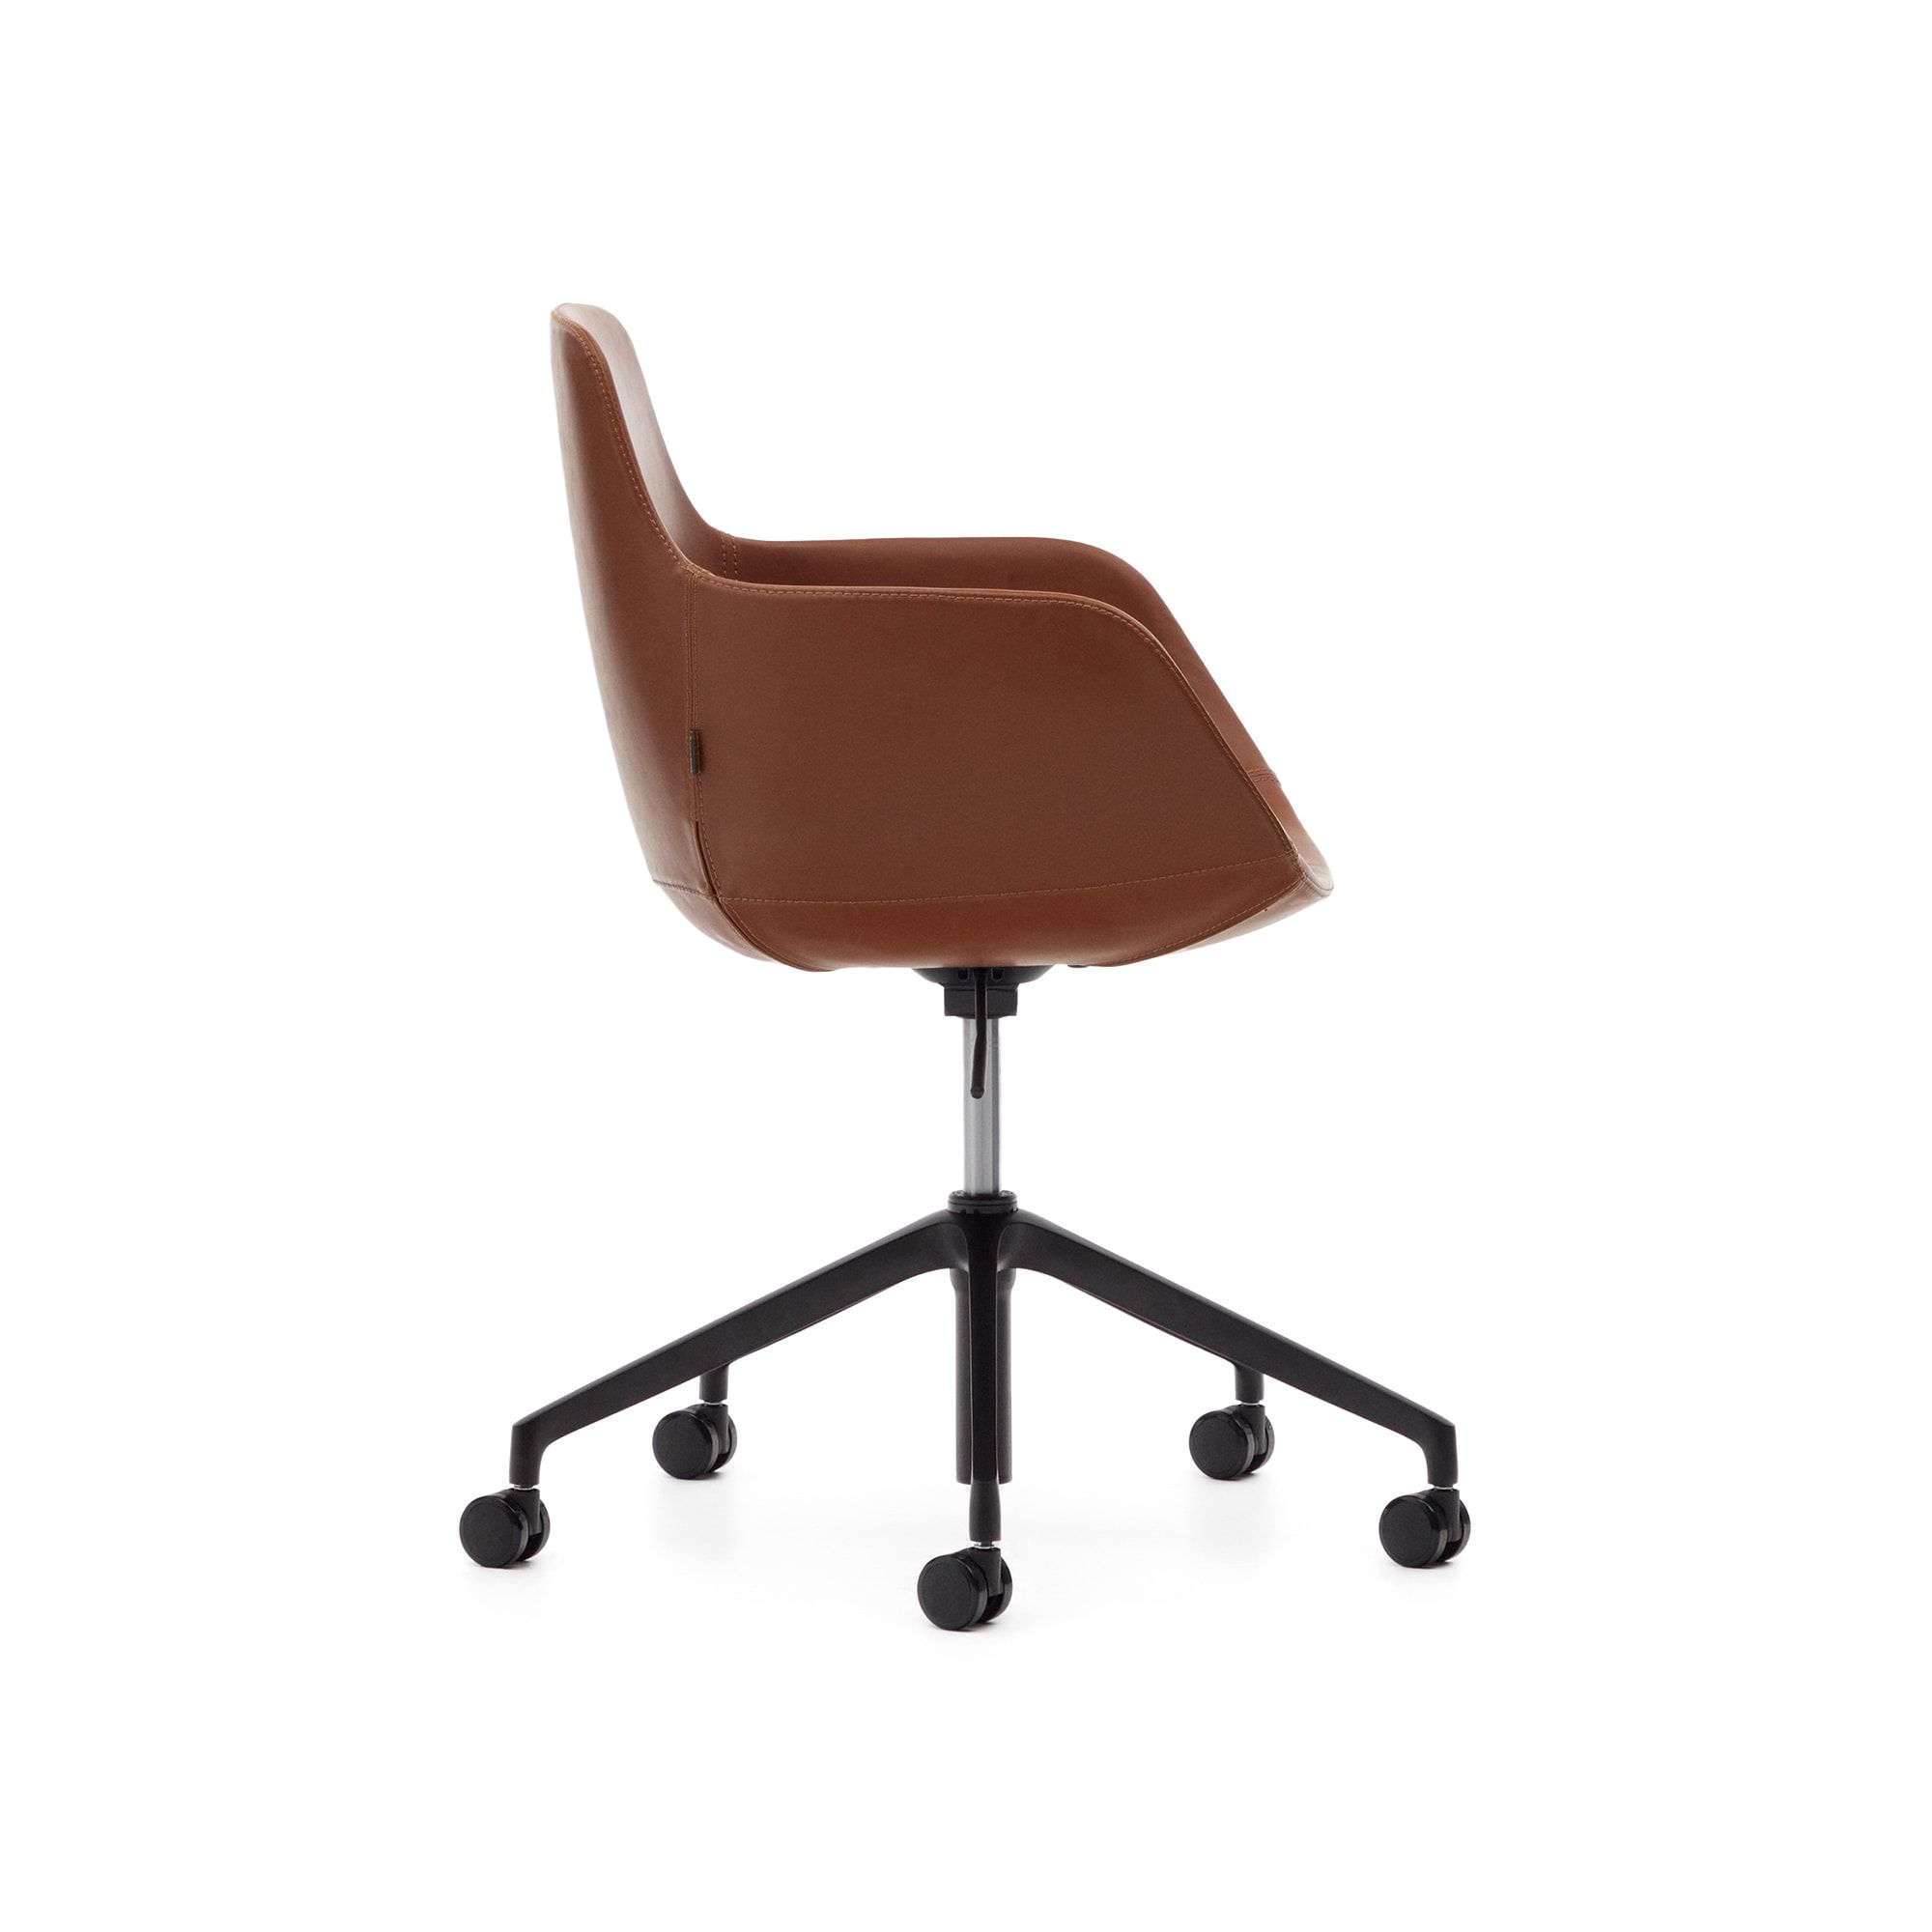 Рабочее кресло Tissiana коричневая искусственная кожа, алюминиевые ножки с матовой черной отделкой Tissiana